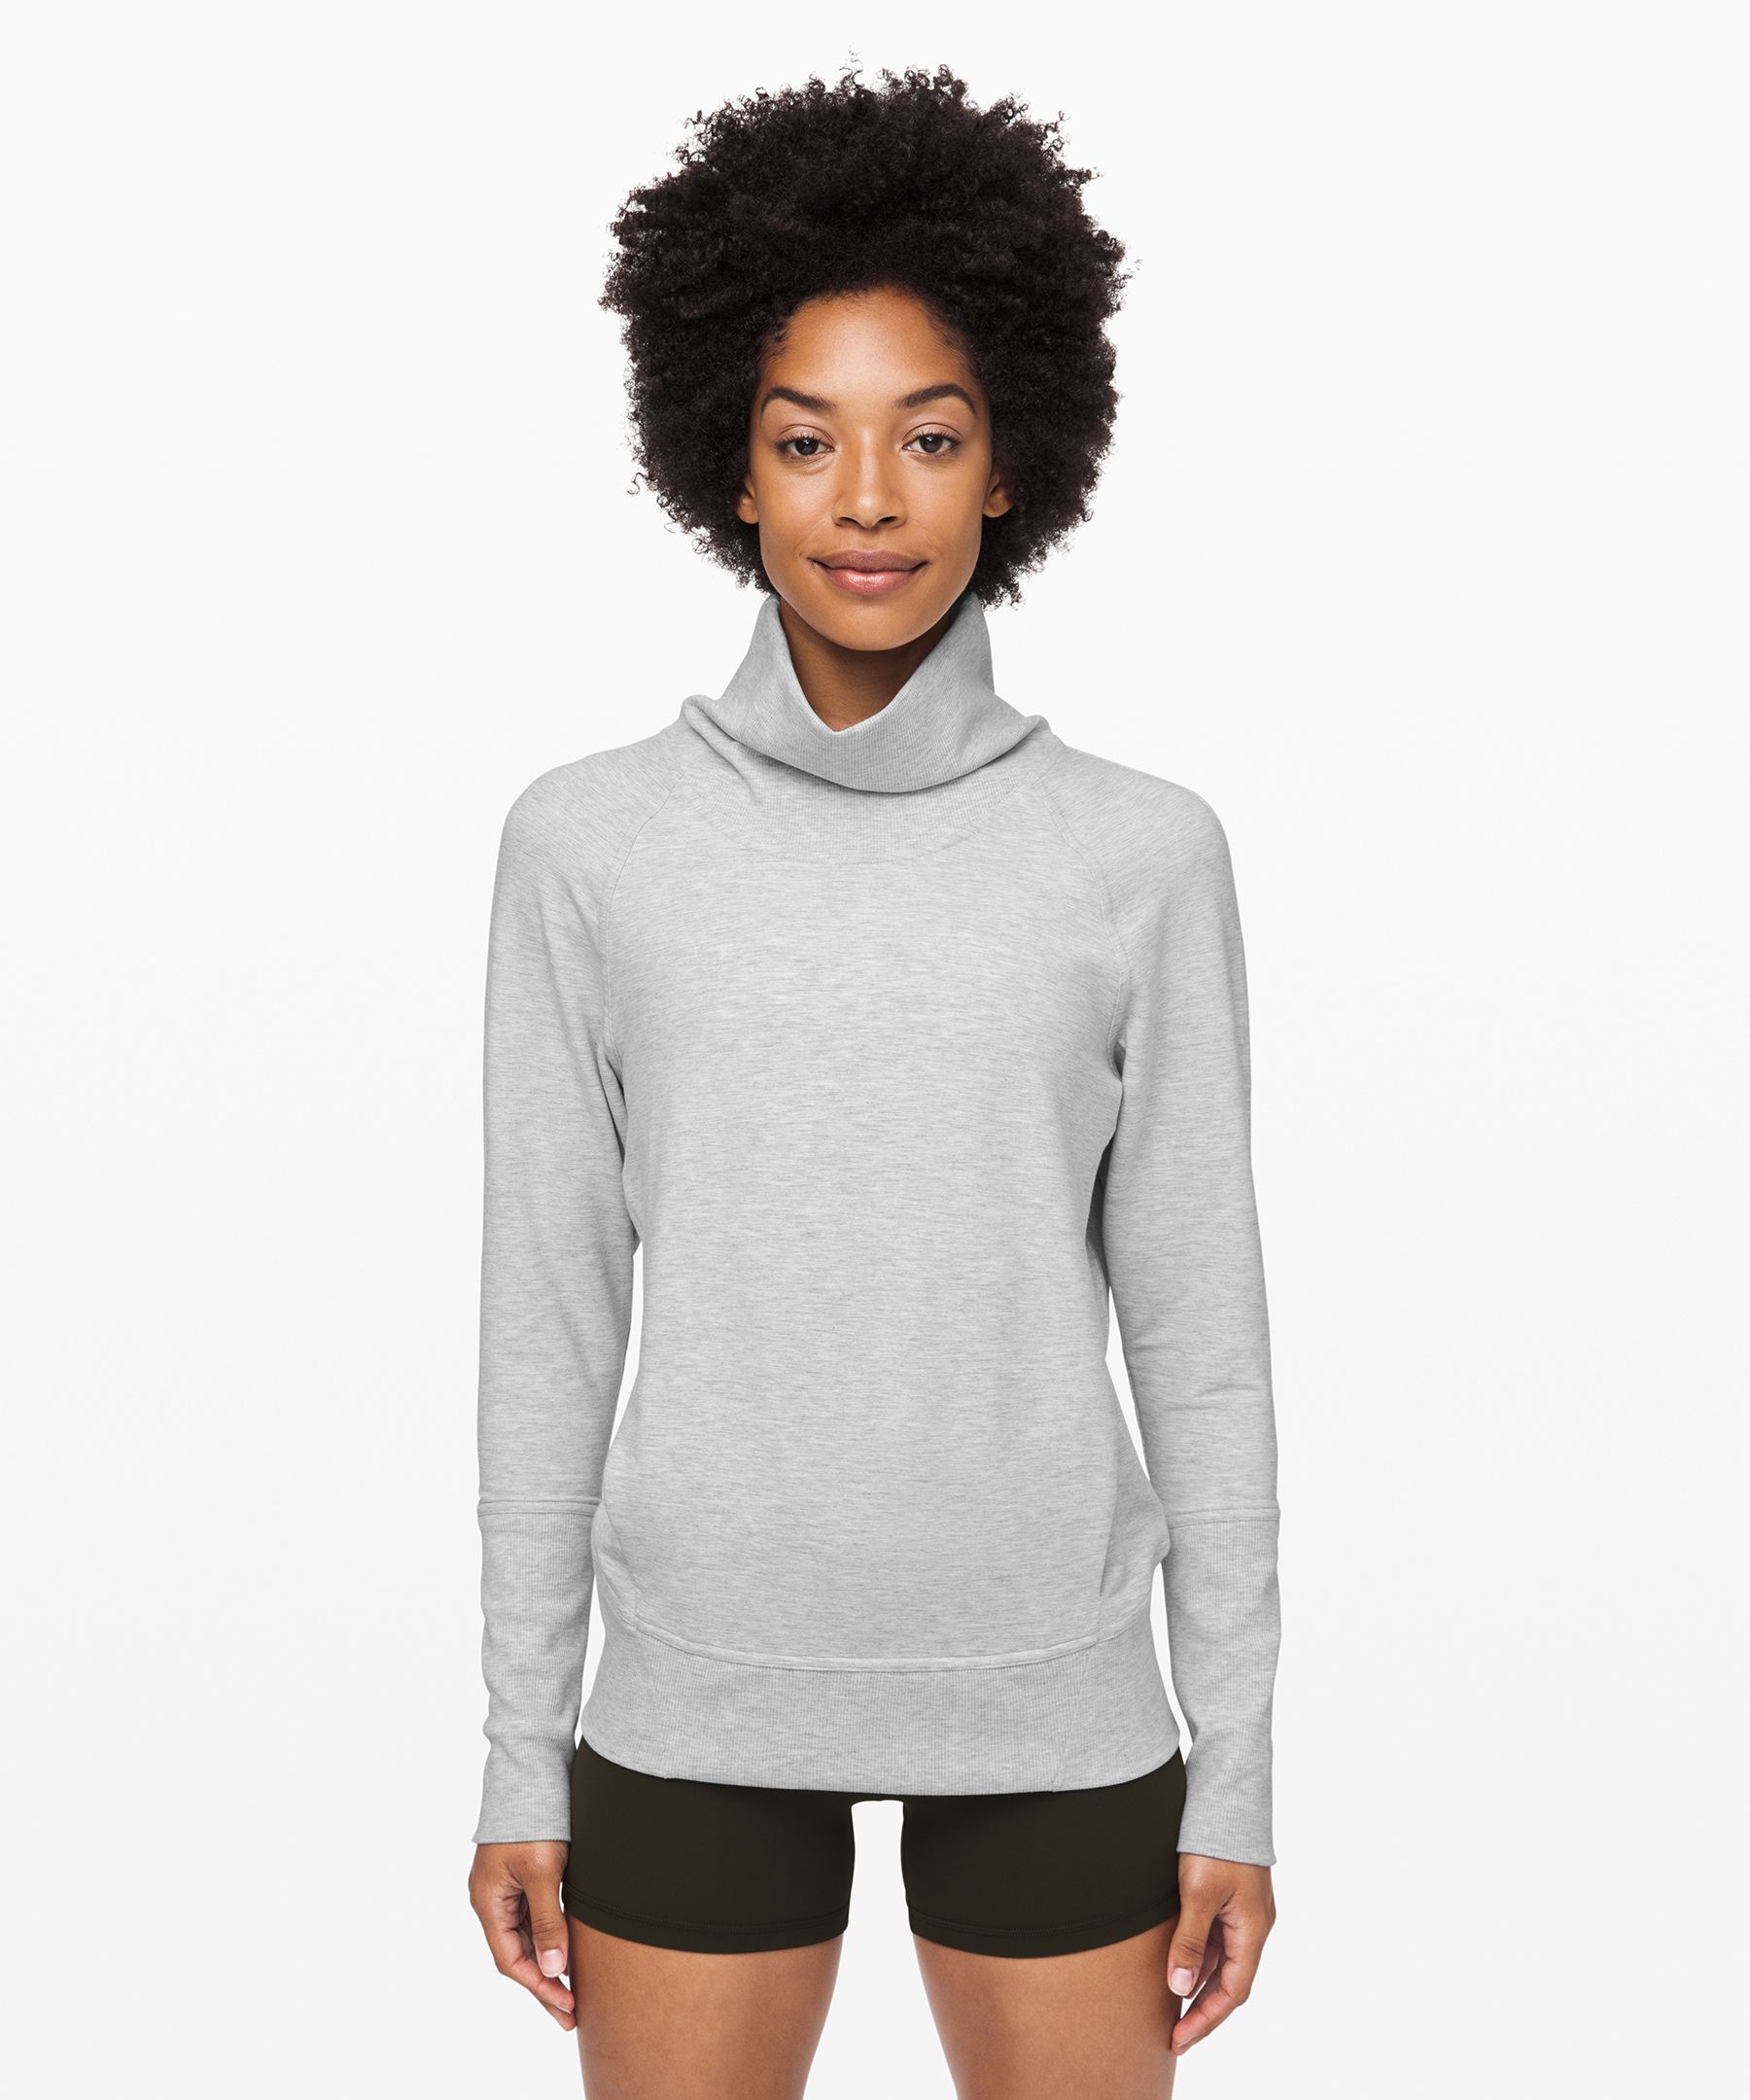 lululemon grey sweatshirt